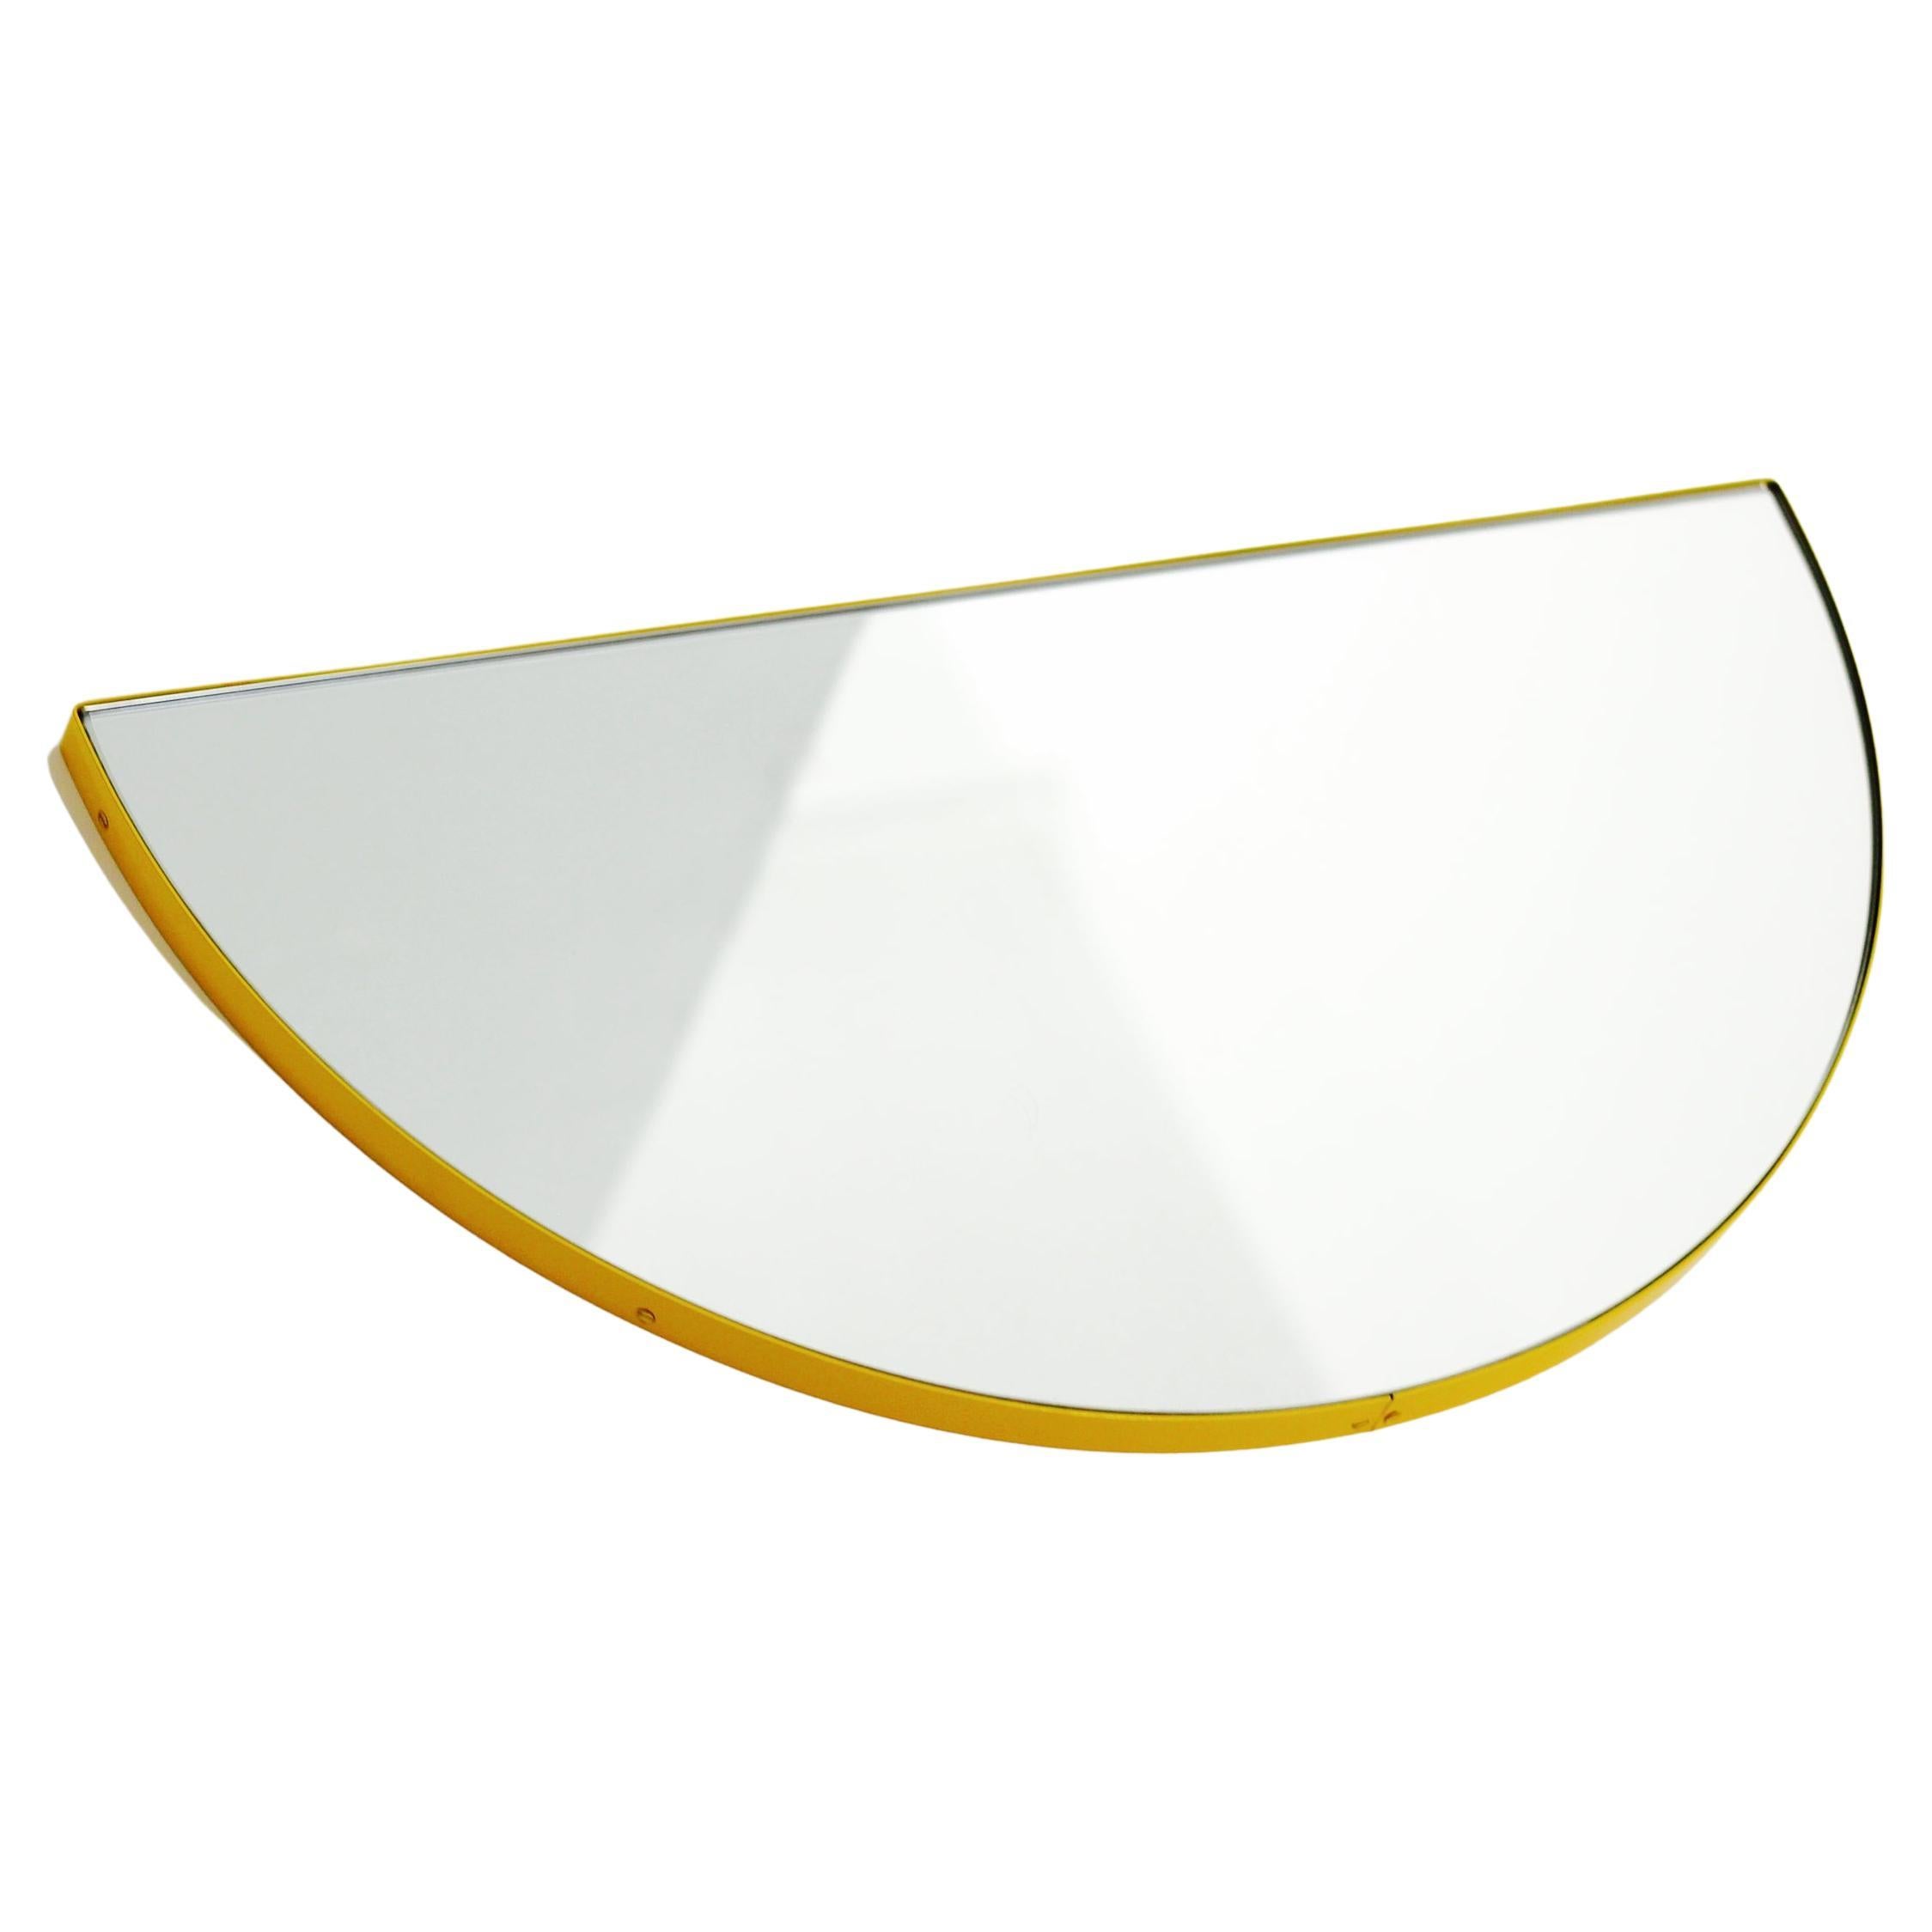 Miroir moderne semi-circulaire Luna avec cadre jaune, personnalisable, régulier